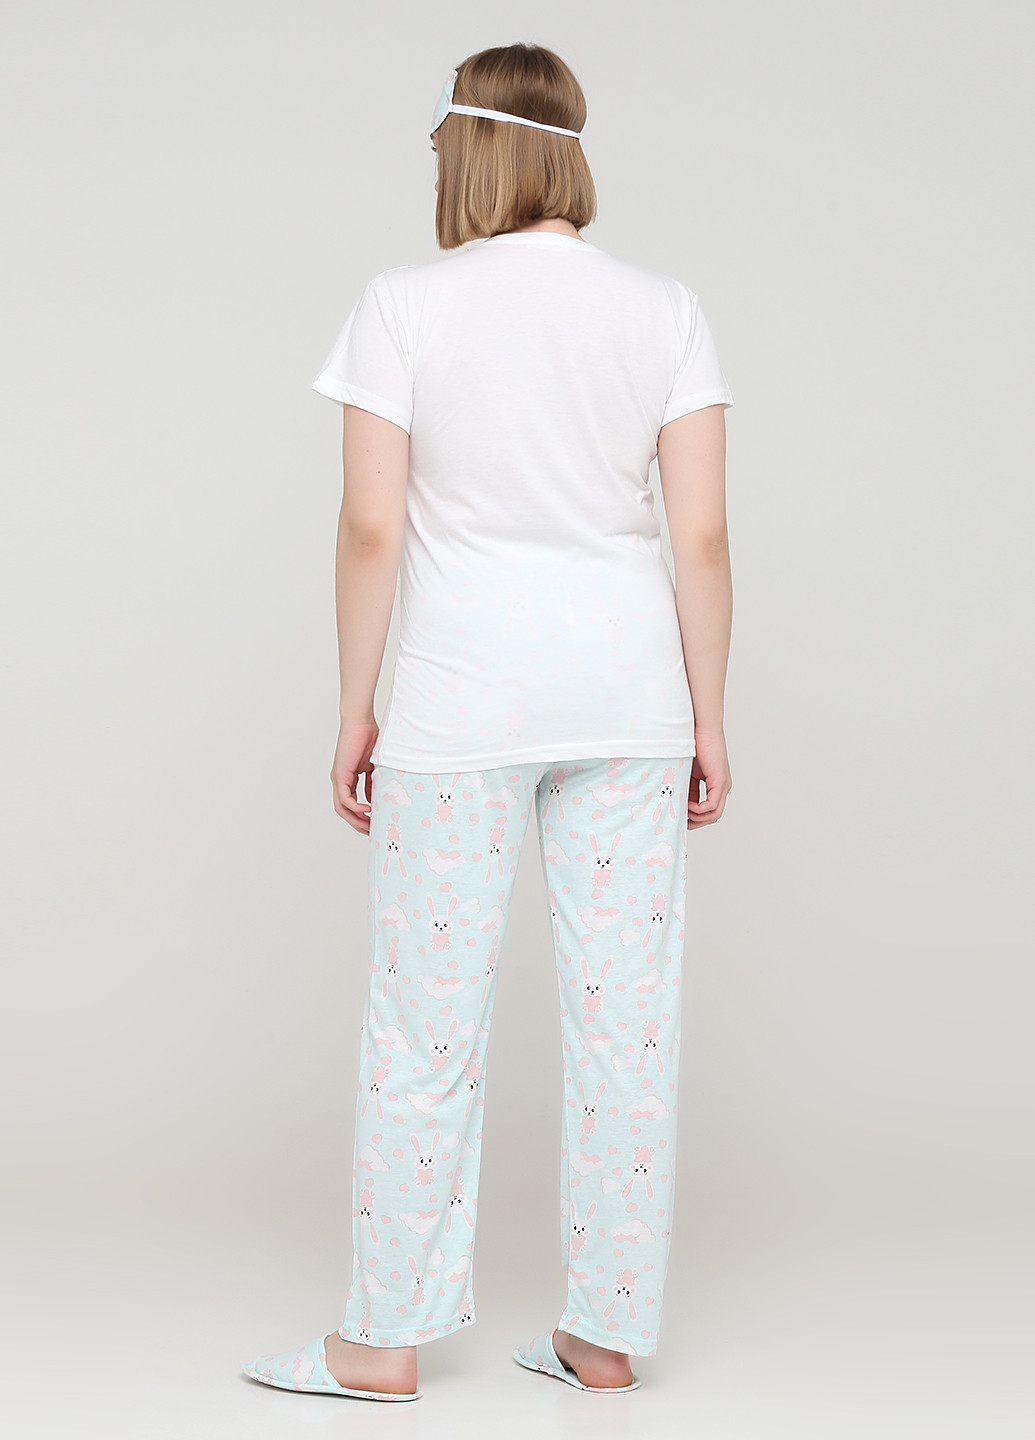 Світло-блакитна всесезон піжама (футболка, штани, маска для сну, тапочки) футболка + штани Mirano